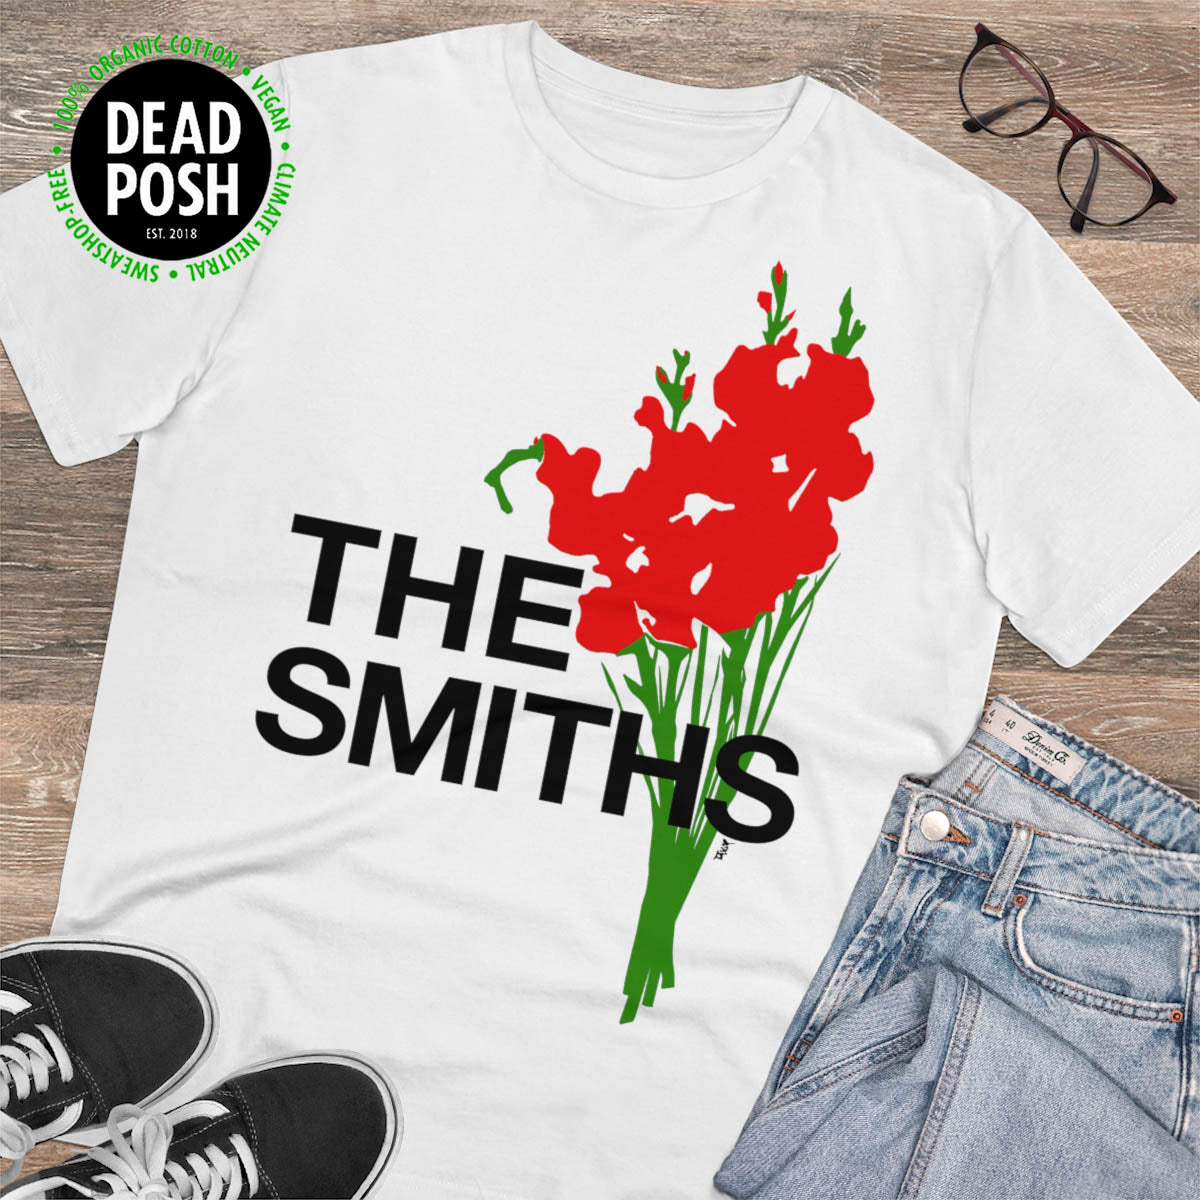 THE SMITHS - 1984 UK Tour